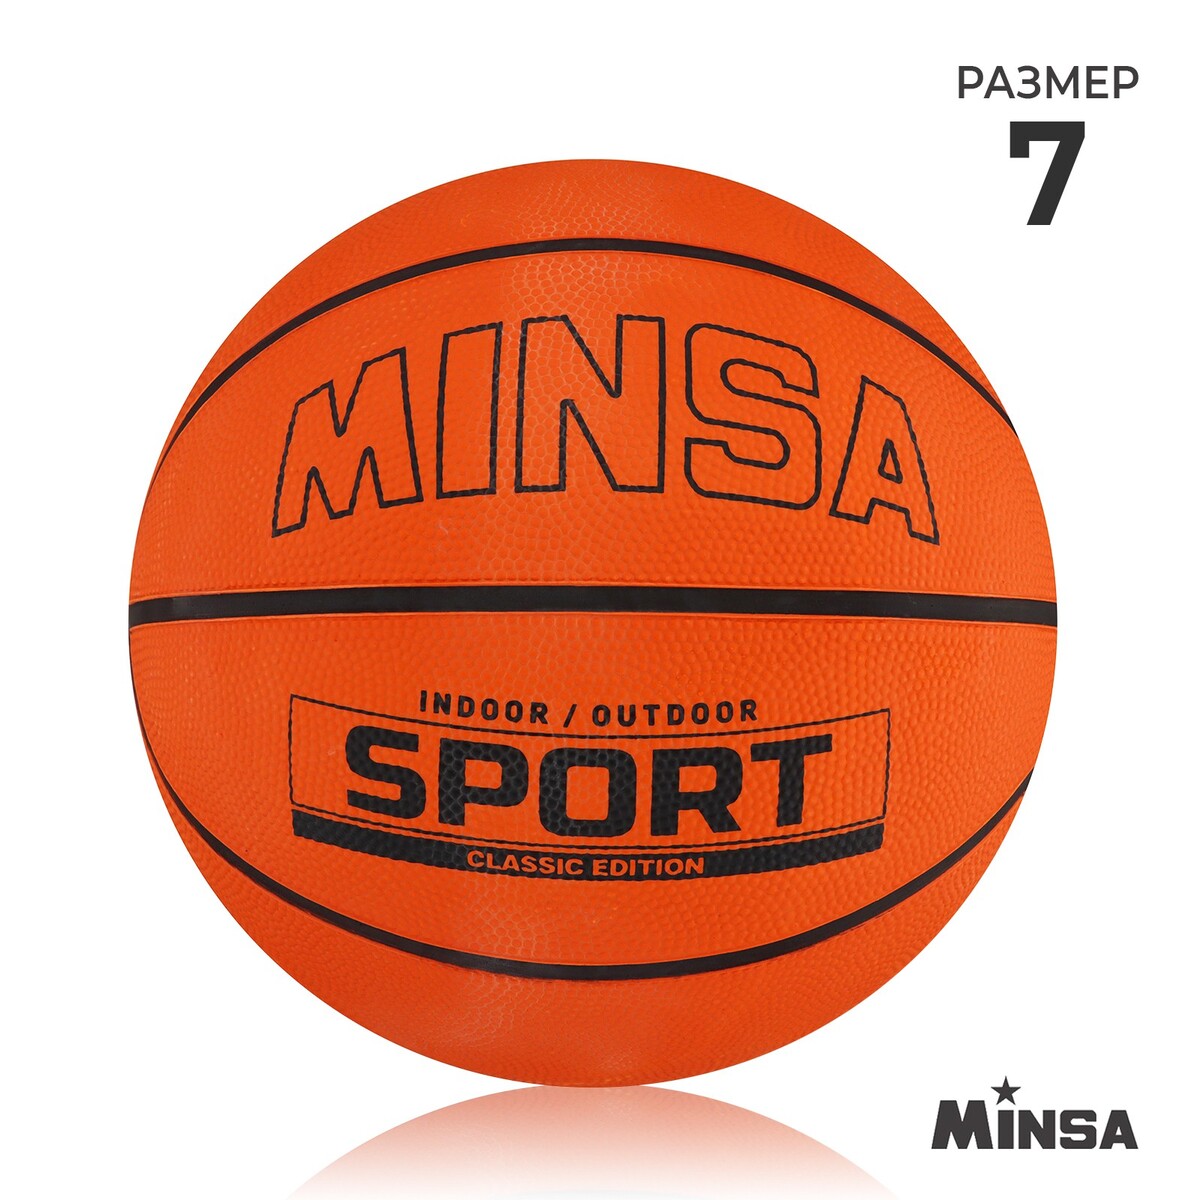 Мяч баскетбольный minsa sport, пвх, клееный, 8 панелей, р. 7 мяч баскетбольный minsa пвх клееный 8 панелей р 5